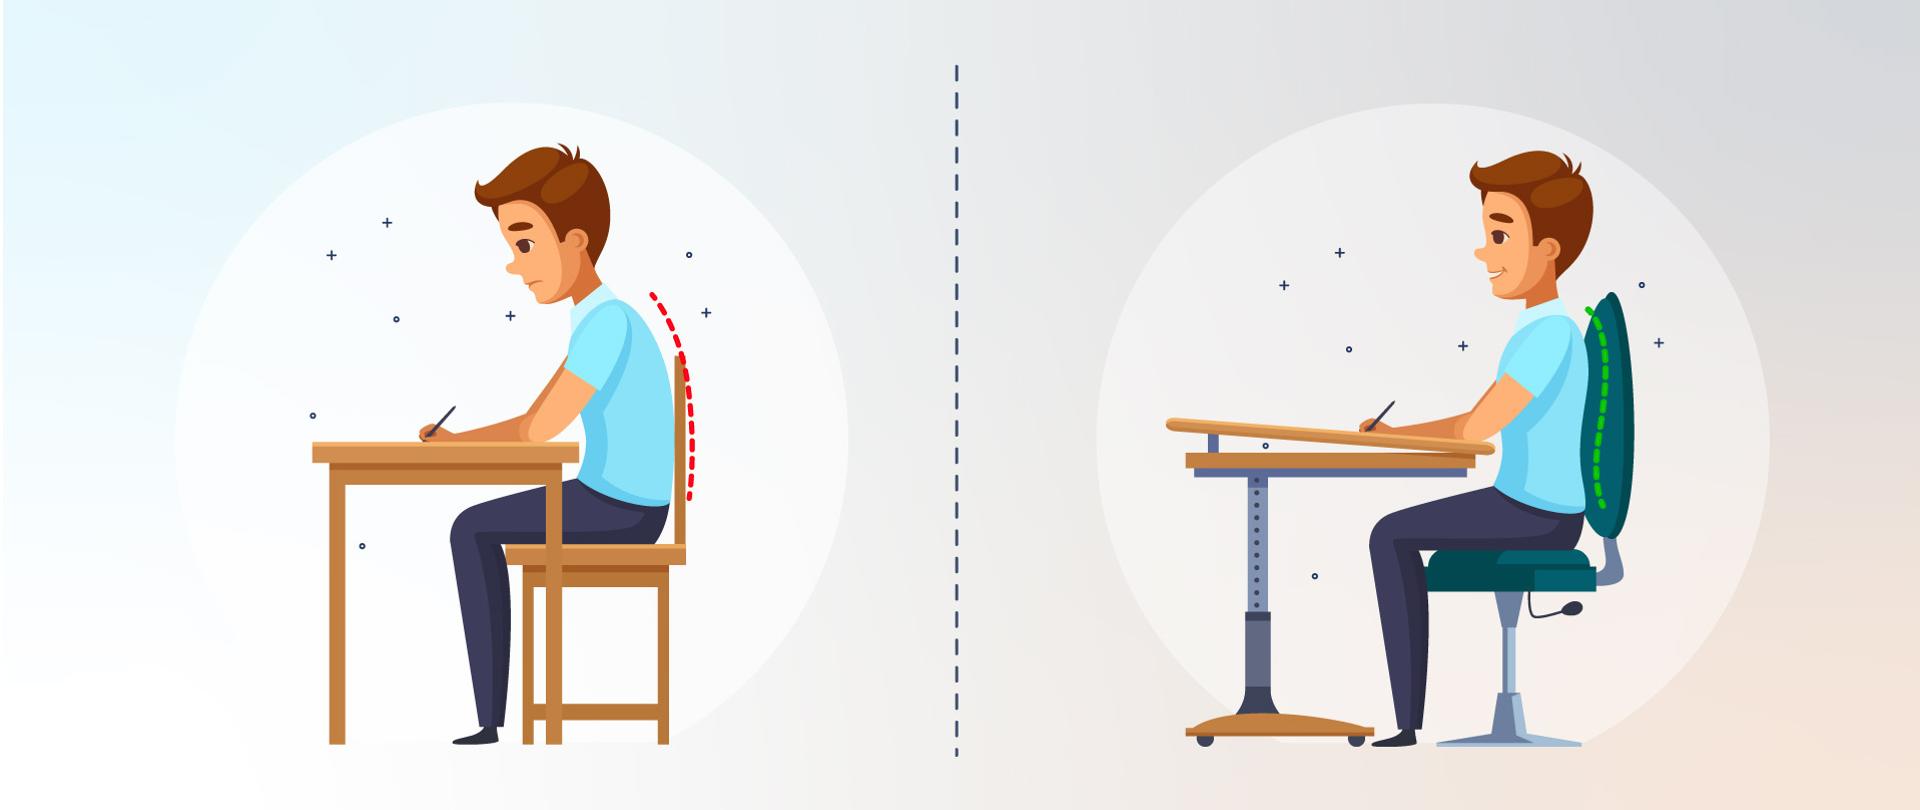 Obrazek podzielony na 2 części. Każda przedstawia siedzącego przy stoliku chłopca. W pierwszej części krzesło jest źle dobrane, nie podpiera kręgosłupa, chłopiec się garbi. W drugiej części postawa jest prawidłowa, krzesło i stolik są regulowane. 